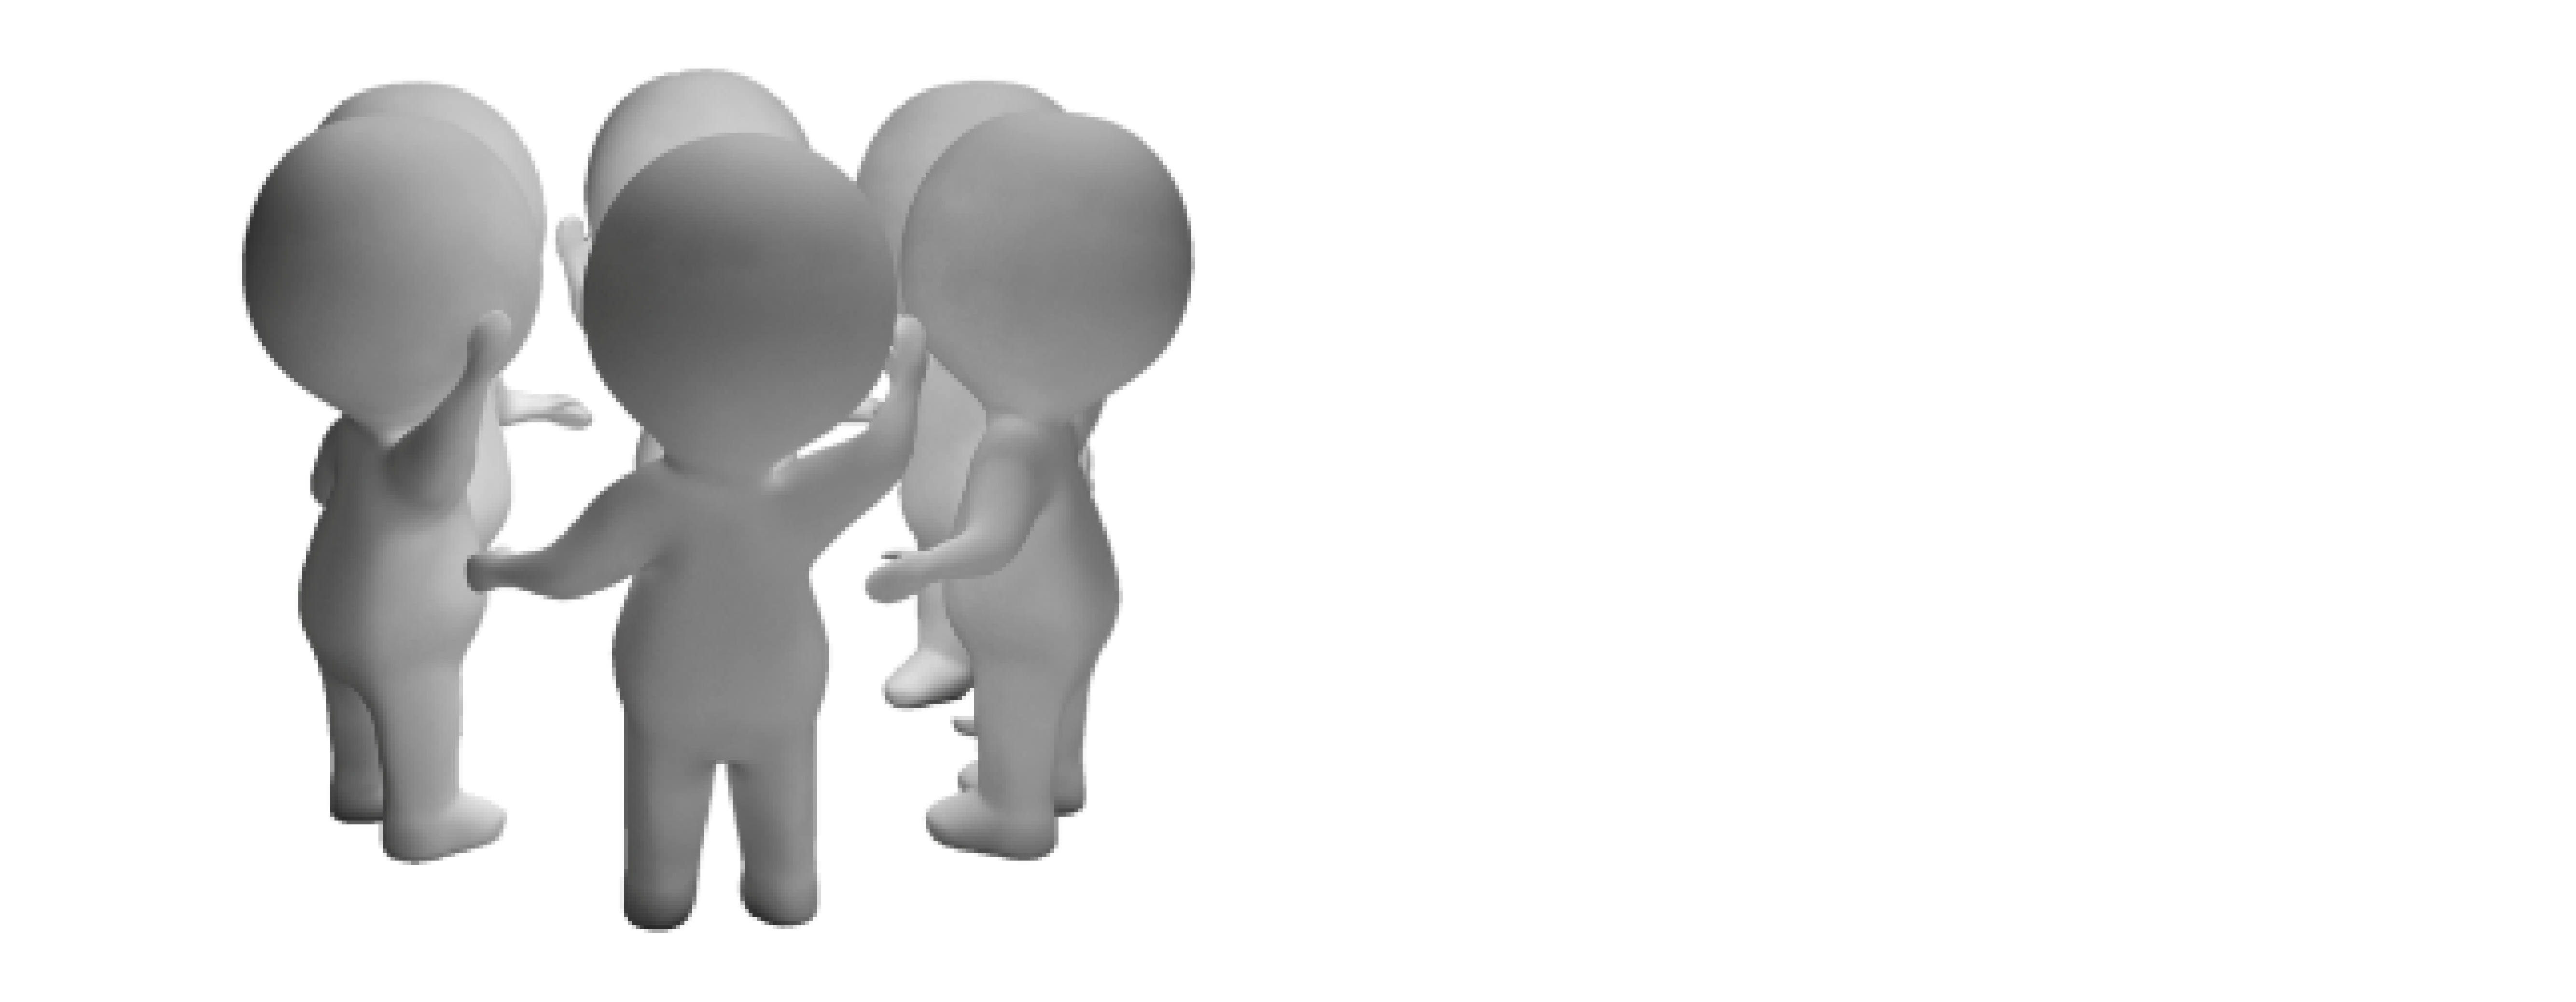 Explore Big Ideas